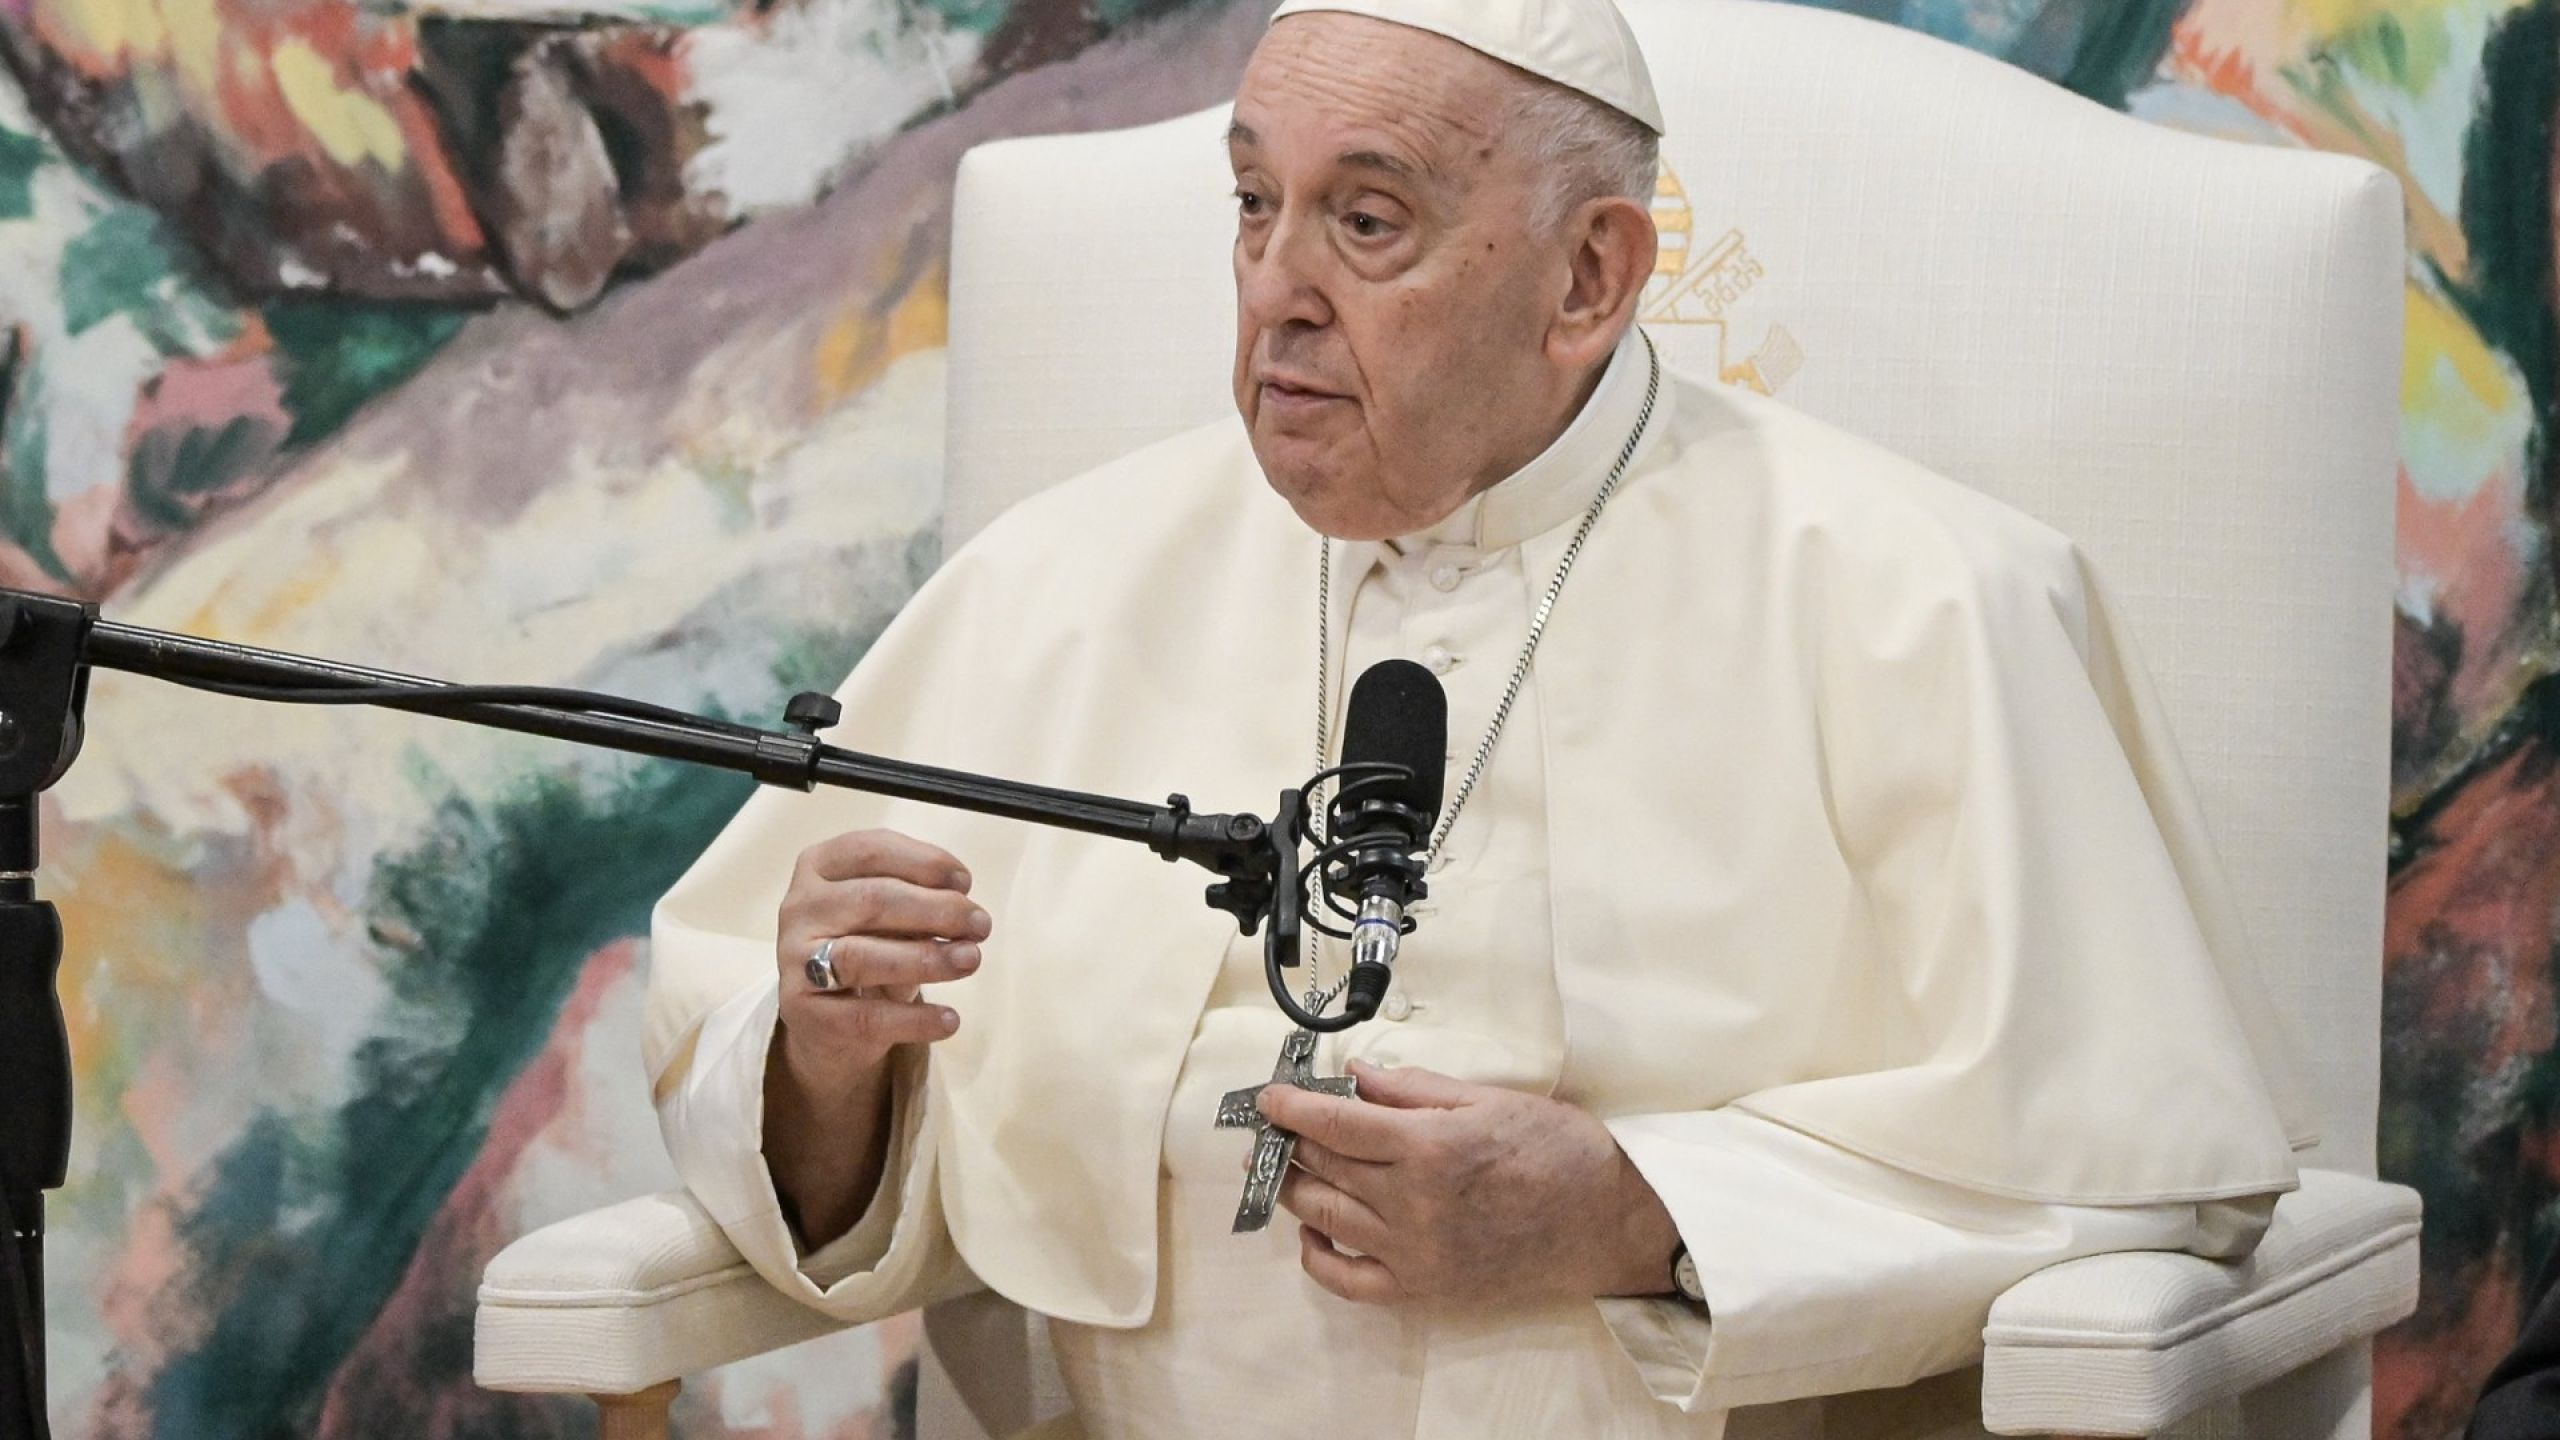 Doutes de cinq cardinaux : la réponse du pape François